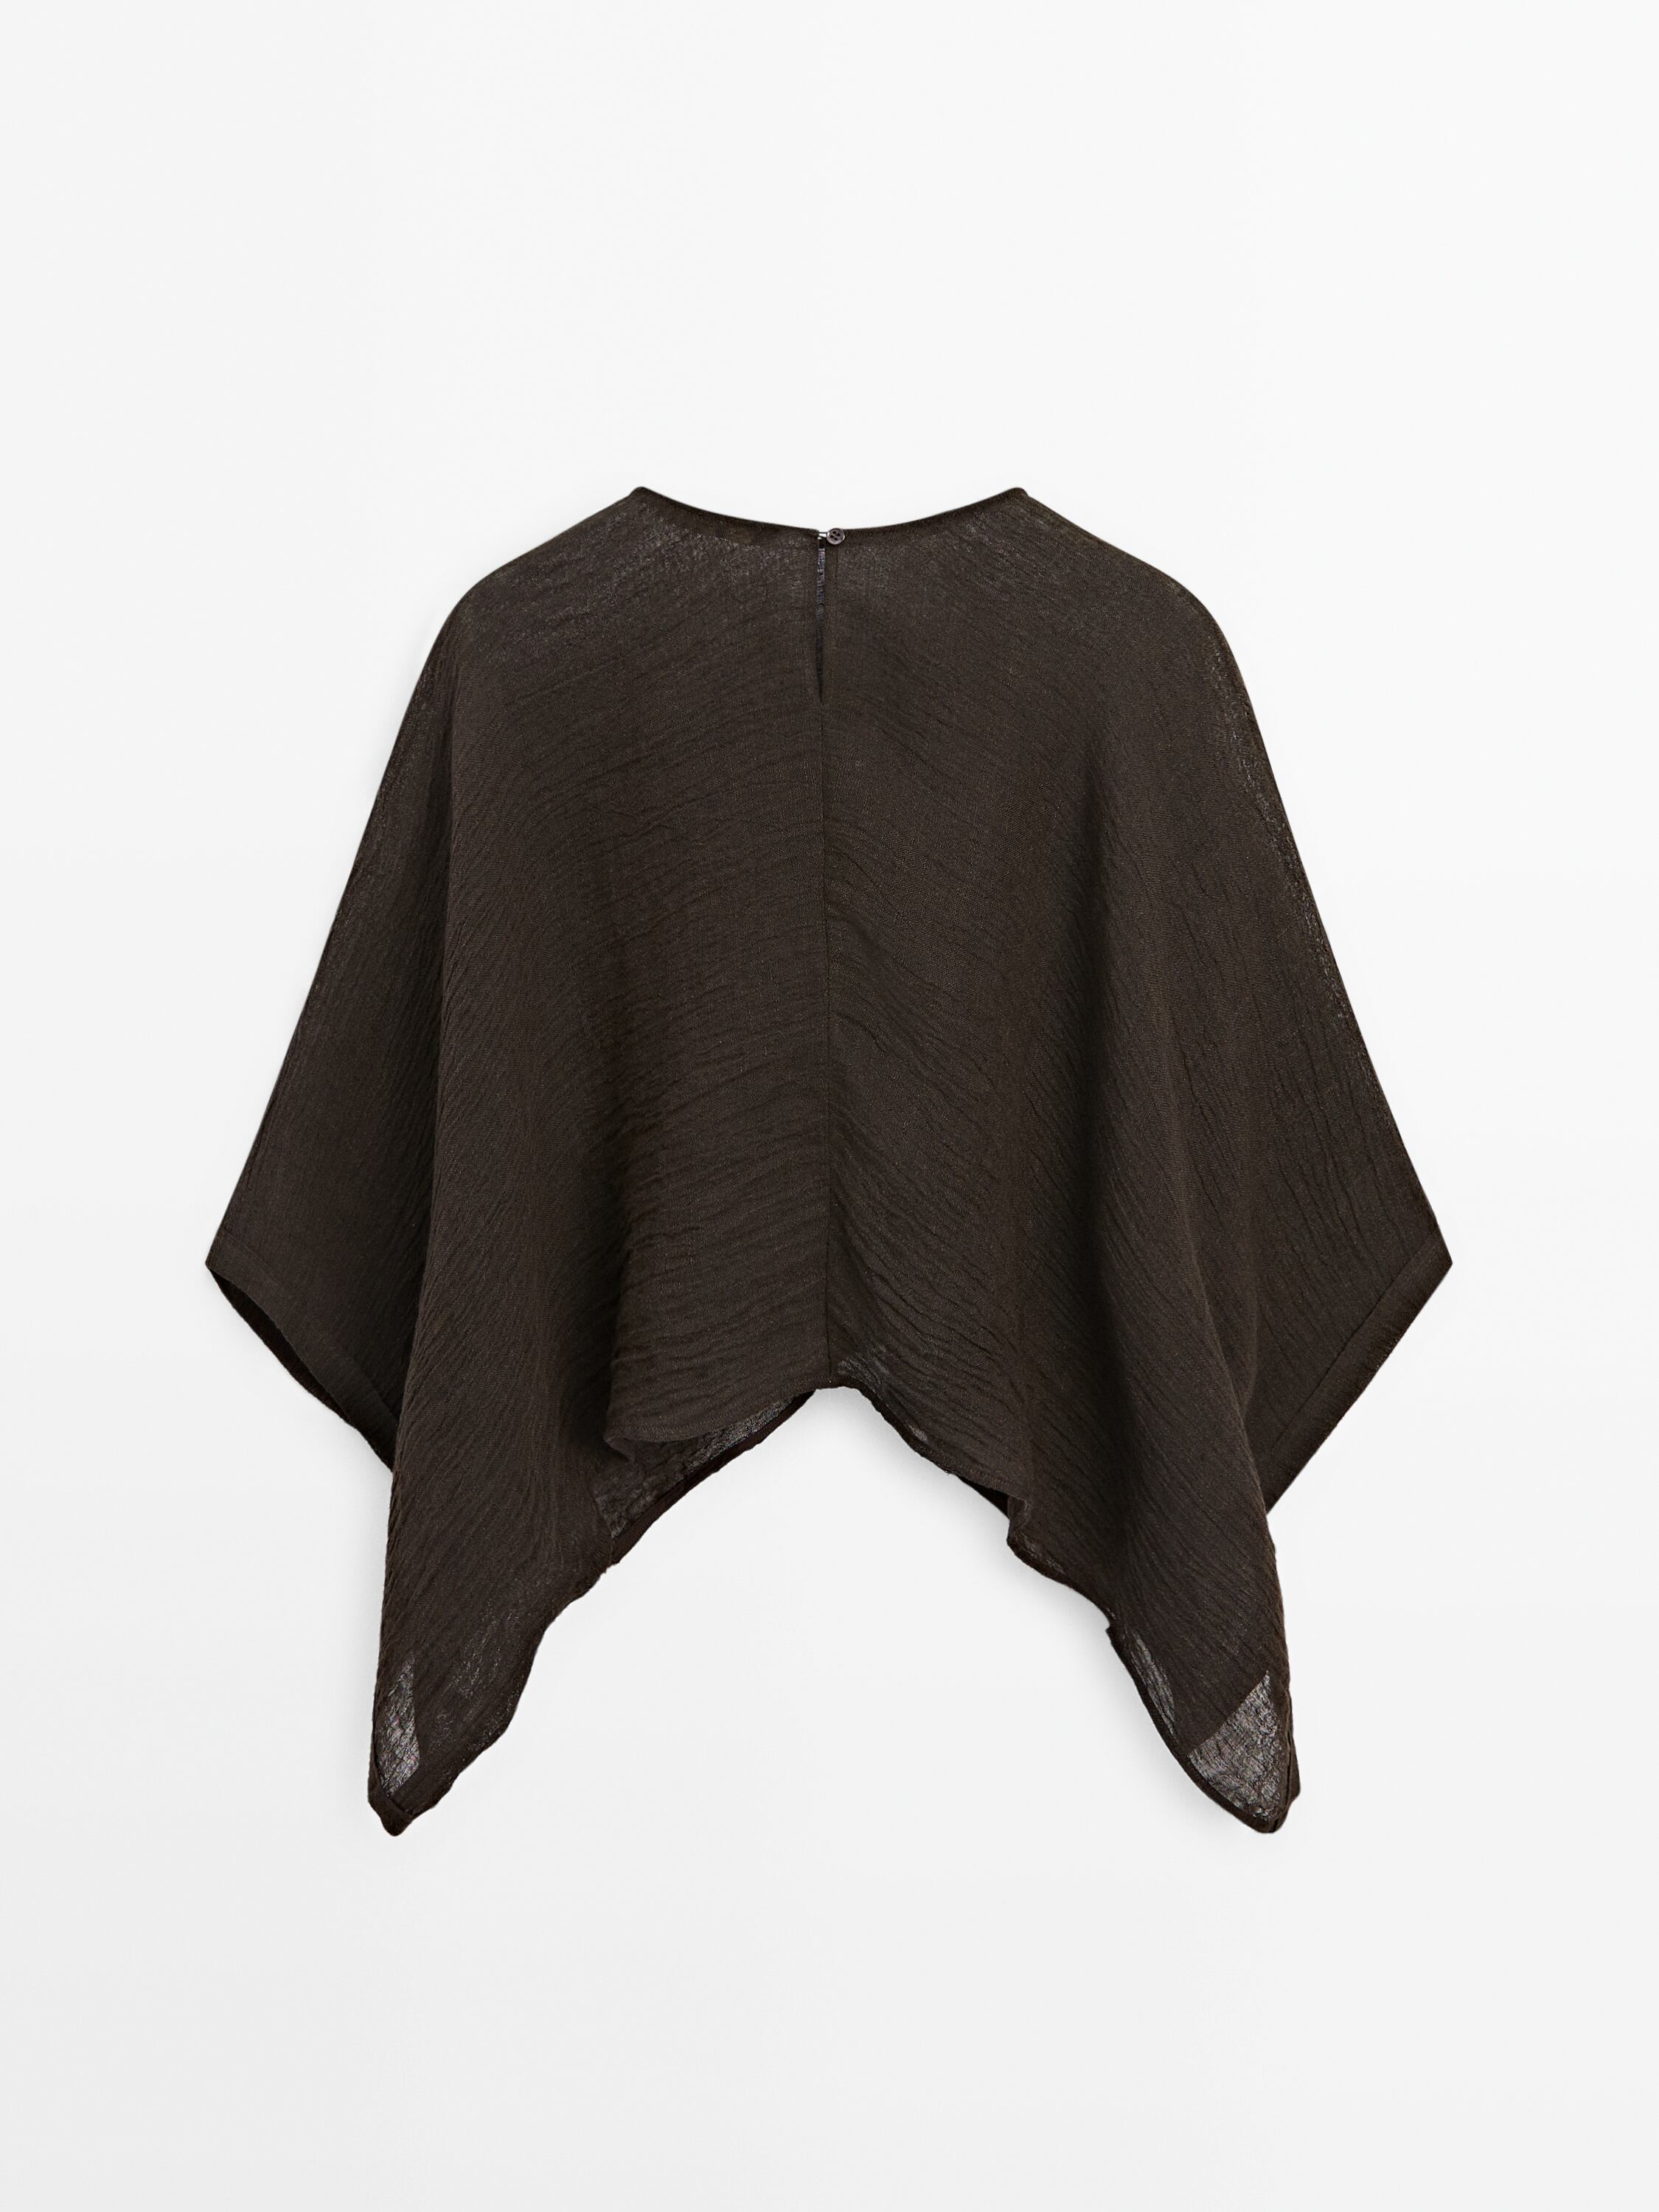 100% linen cape with slit detail